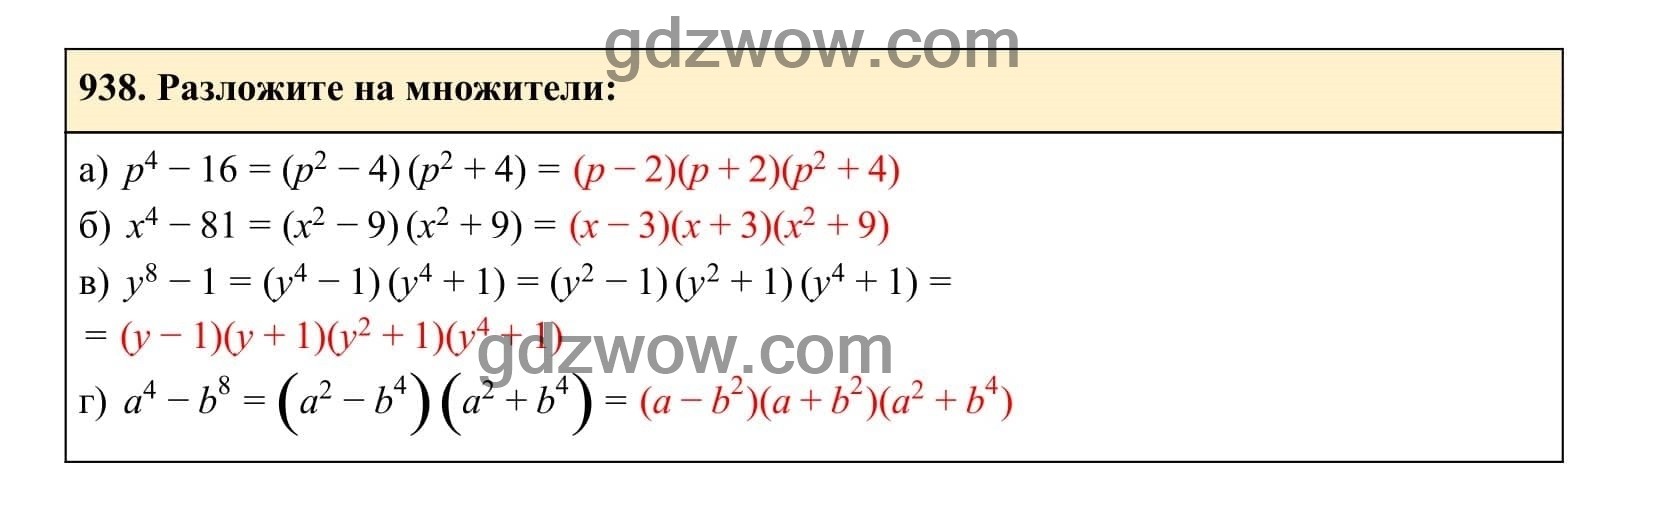 Упражнение 938 - ГДЗ по Алгебре 7 класс Учебник Макарычев (решебник) - GDZwow